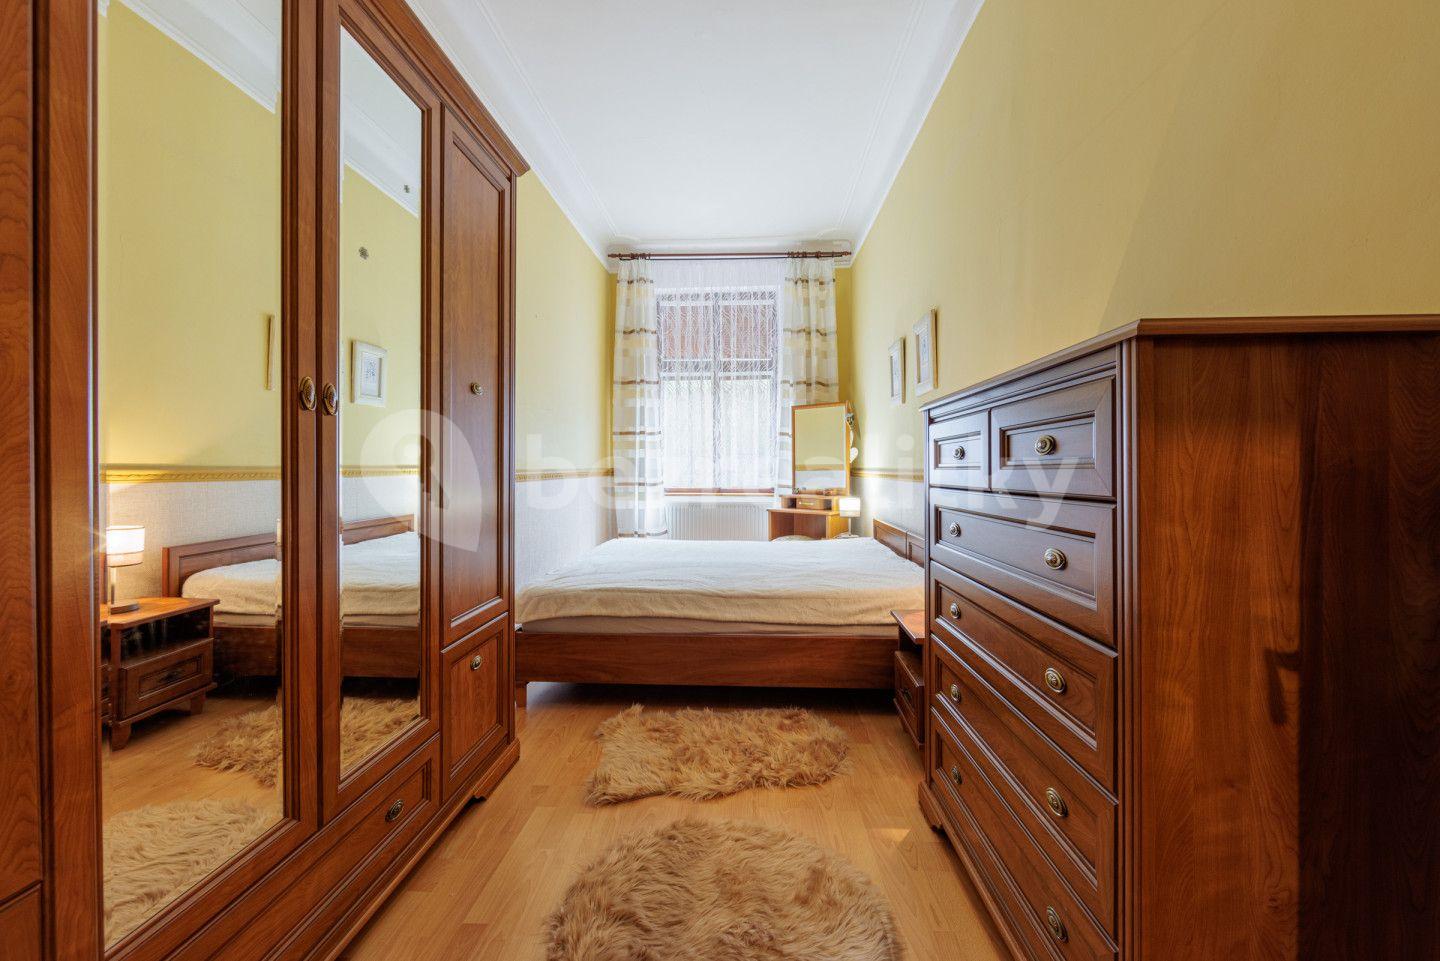 3 bedroom flat for sale, 84 m², Svahová, Karlovy Vary, Karlovarský Region